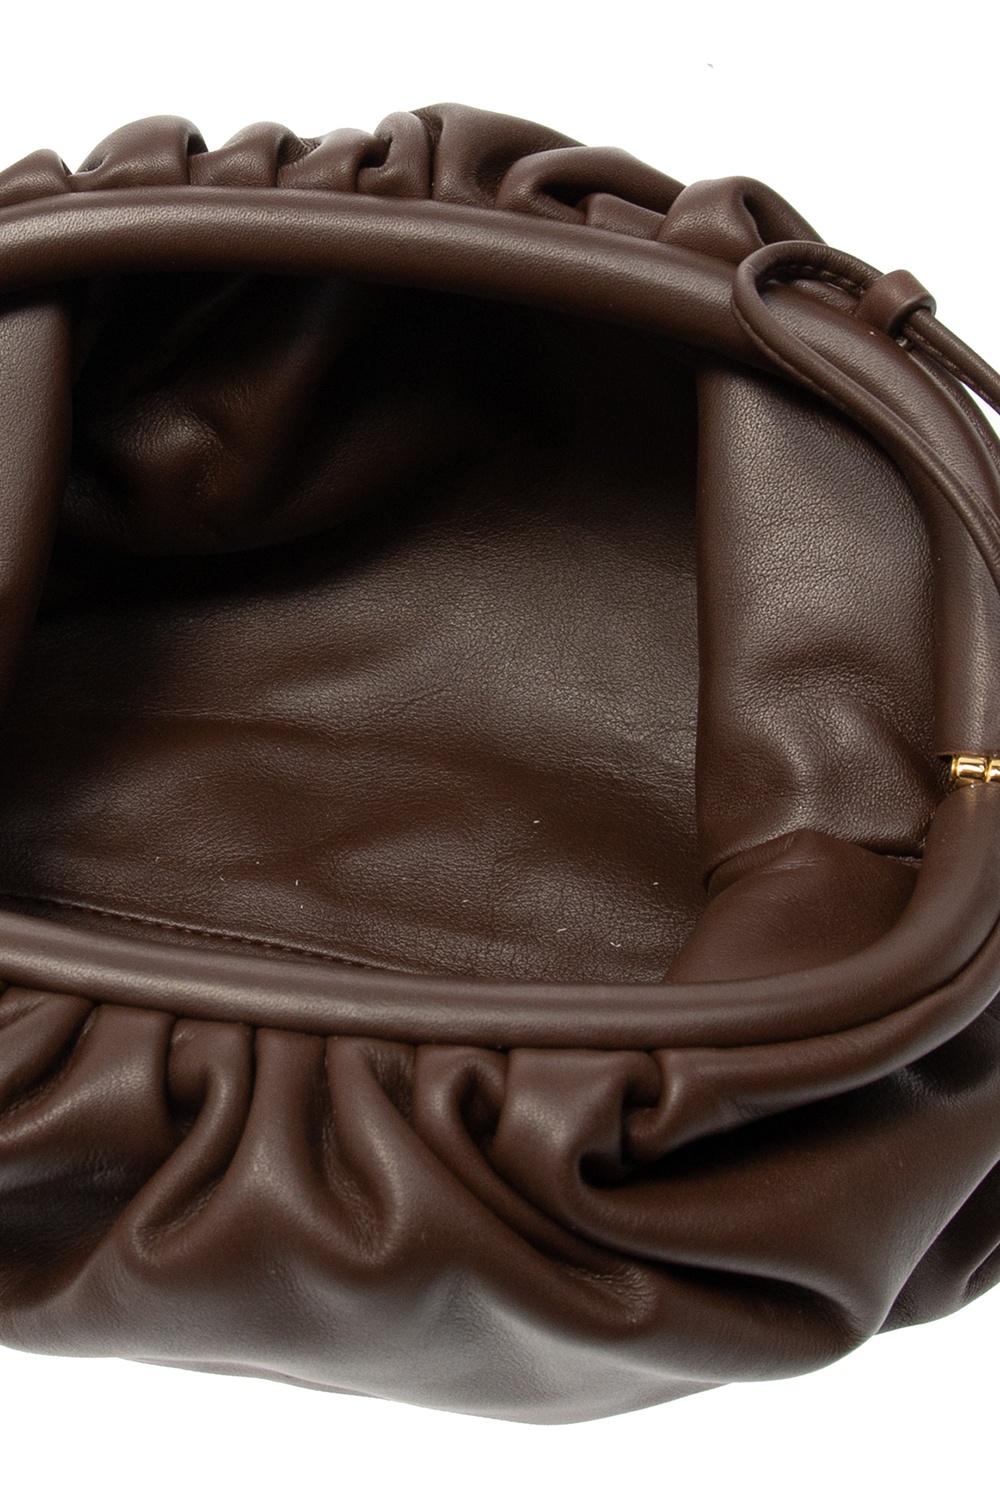 The Mini Pouch' shoulder bag Bottega Veneta - Vitkac GB